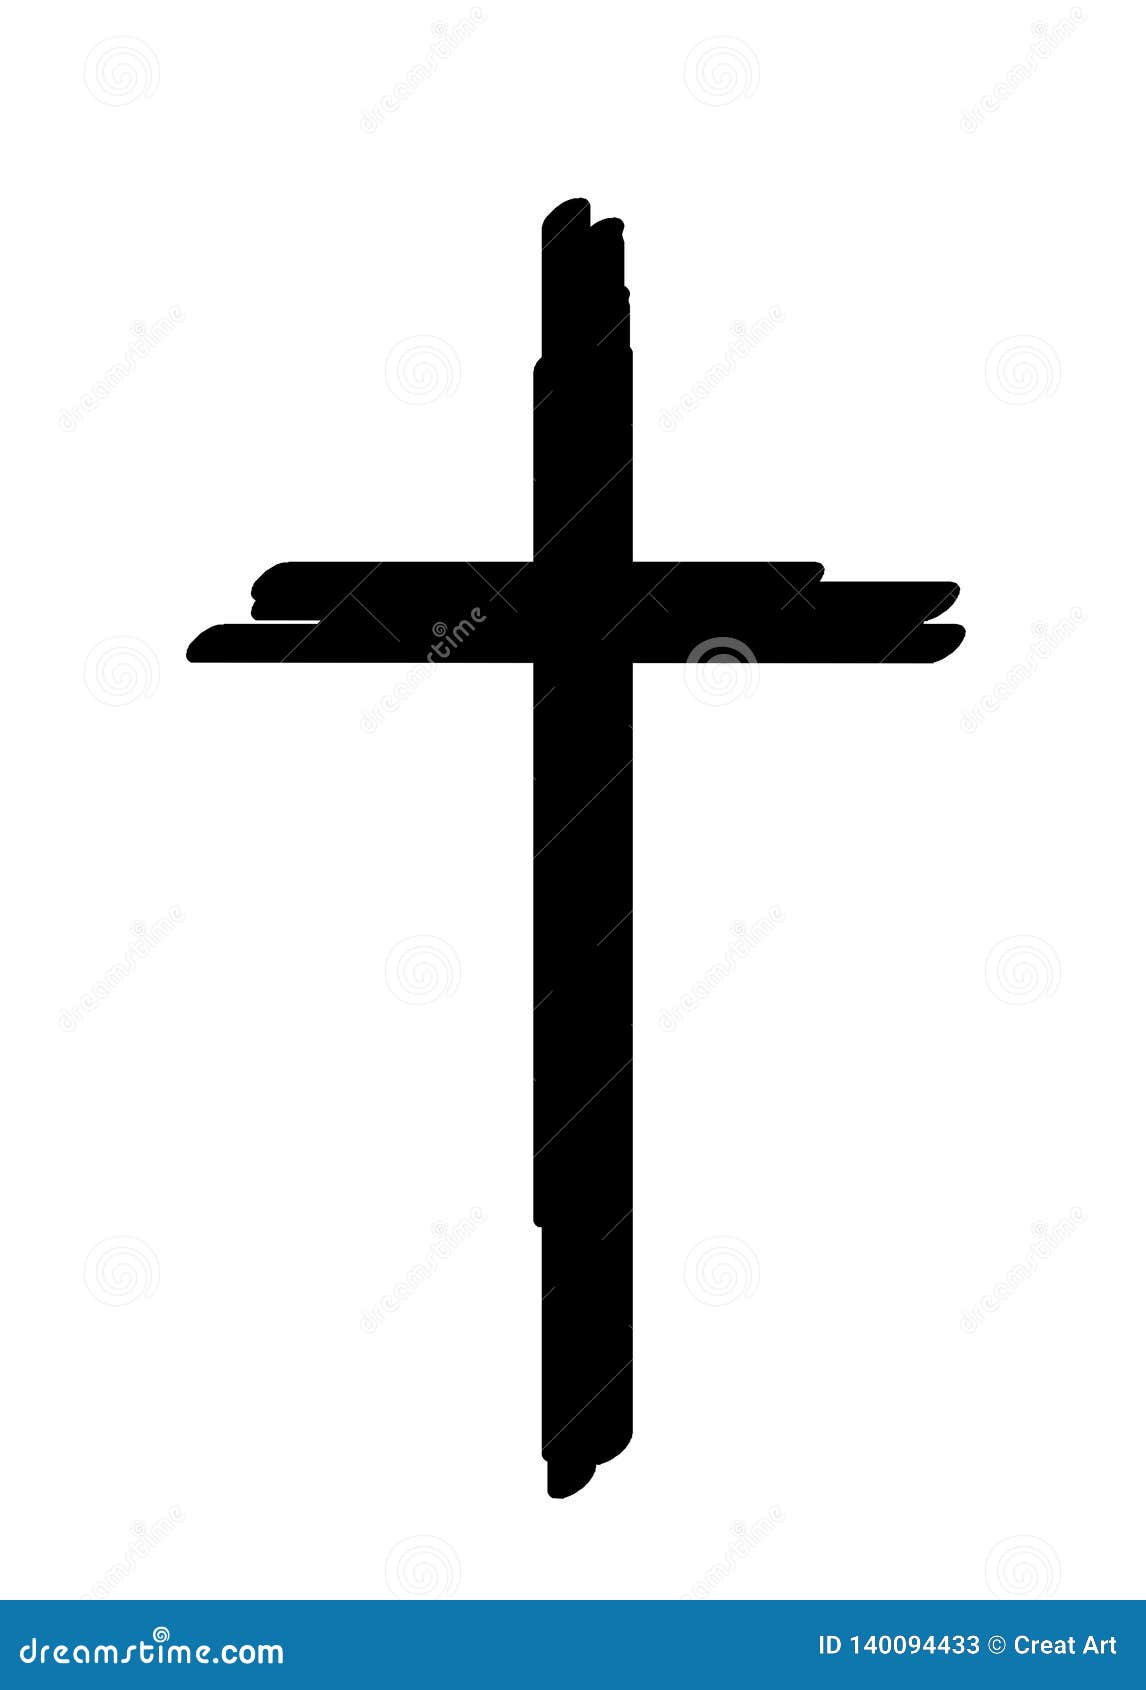 cross black silhouette.cross silhouette